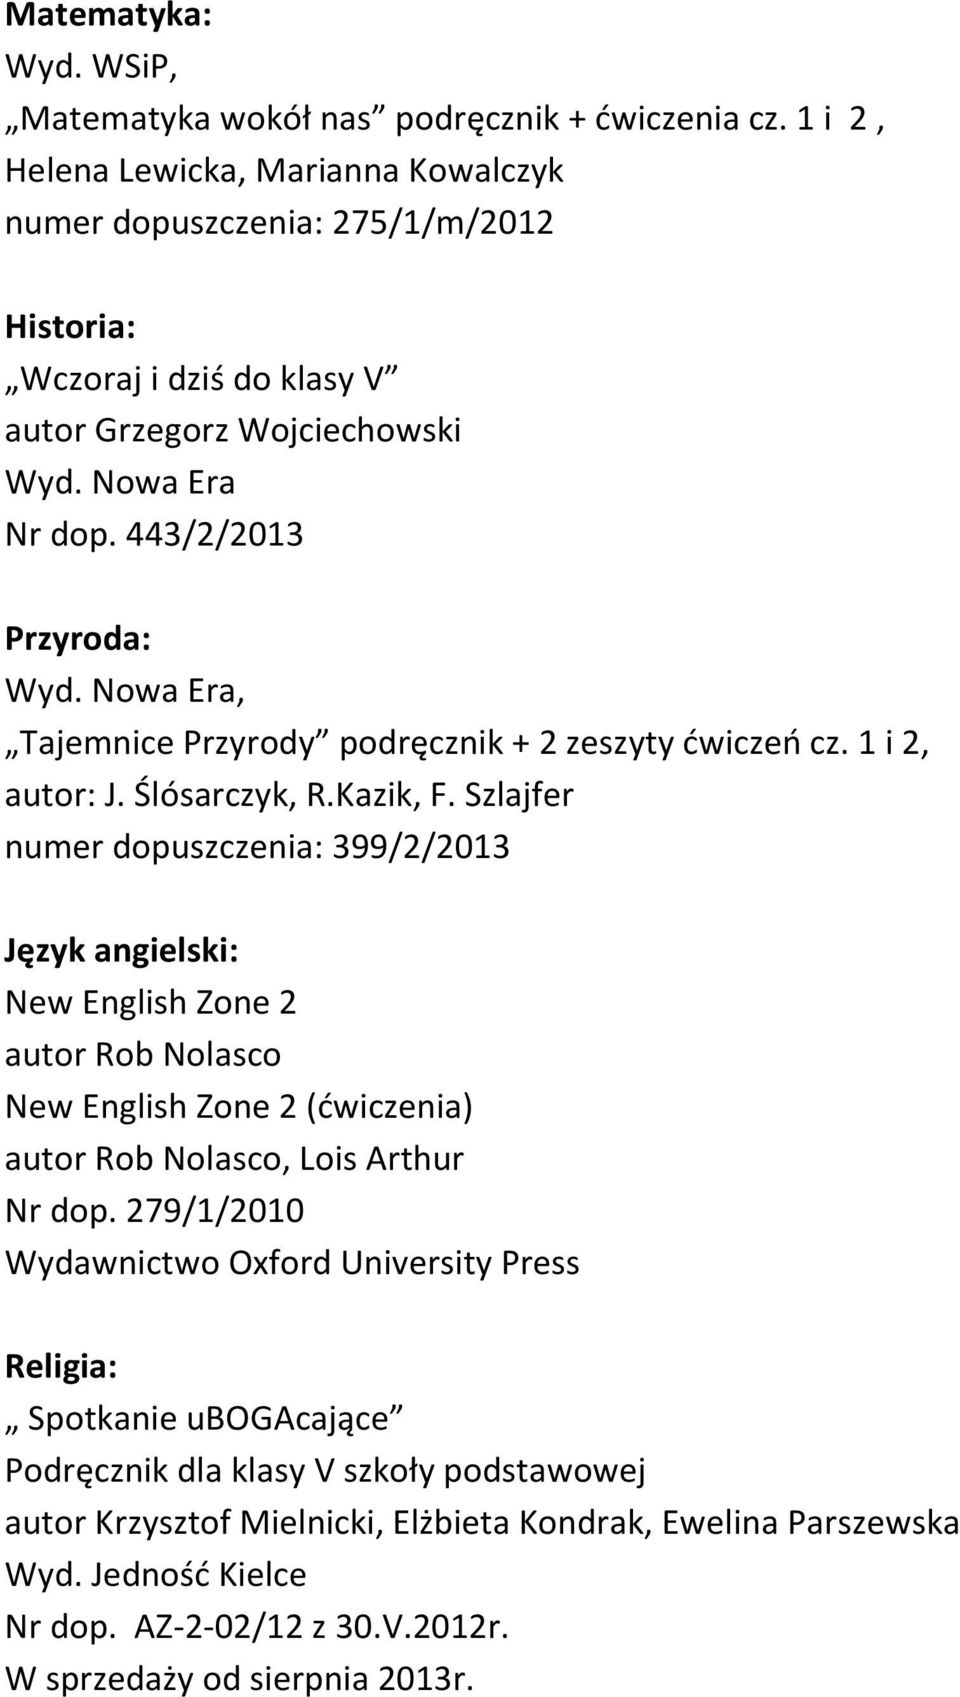 443/2/2013 Przyroda:, Tajemnice Przyrody podręcznik + 2 zeszyty ćwiczeń cz. 1 i 2, autor: J. Ślósarczyk, R.Kazik, F.